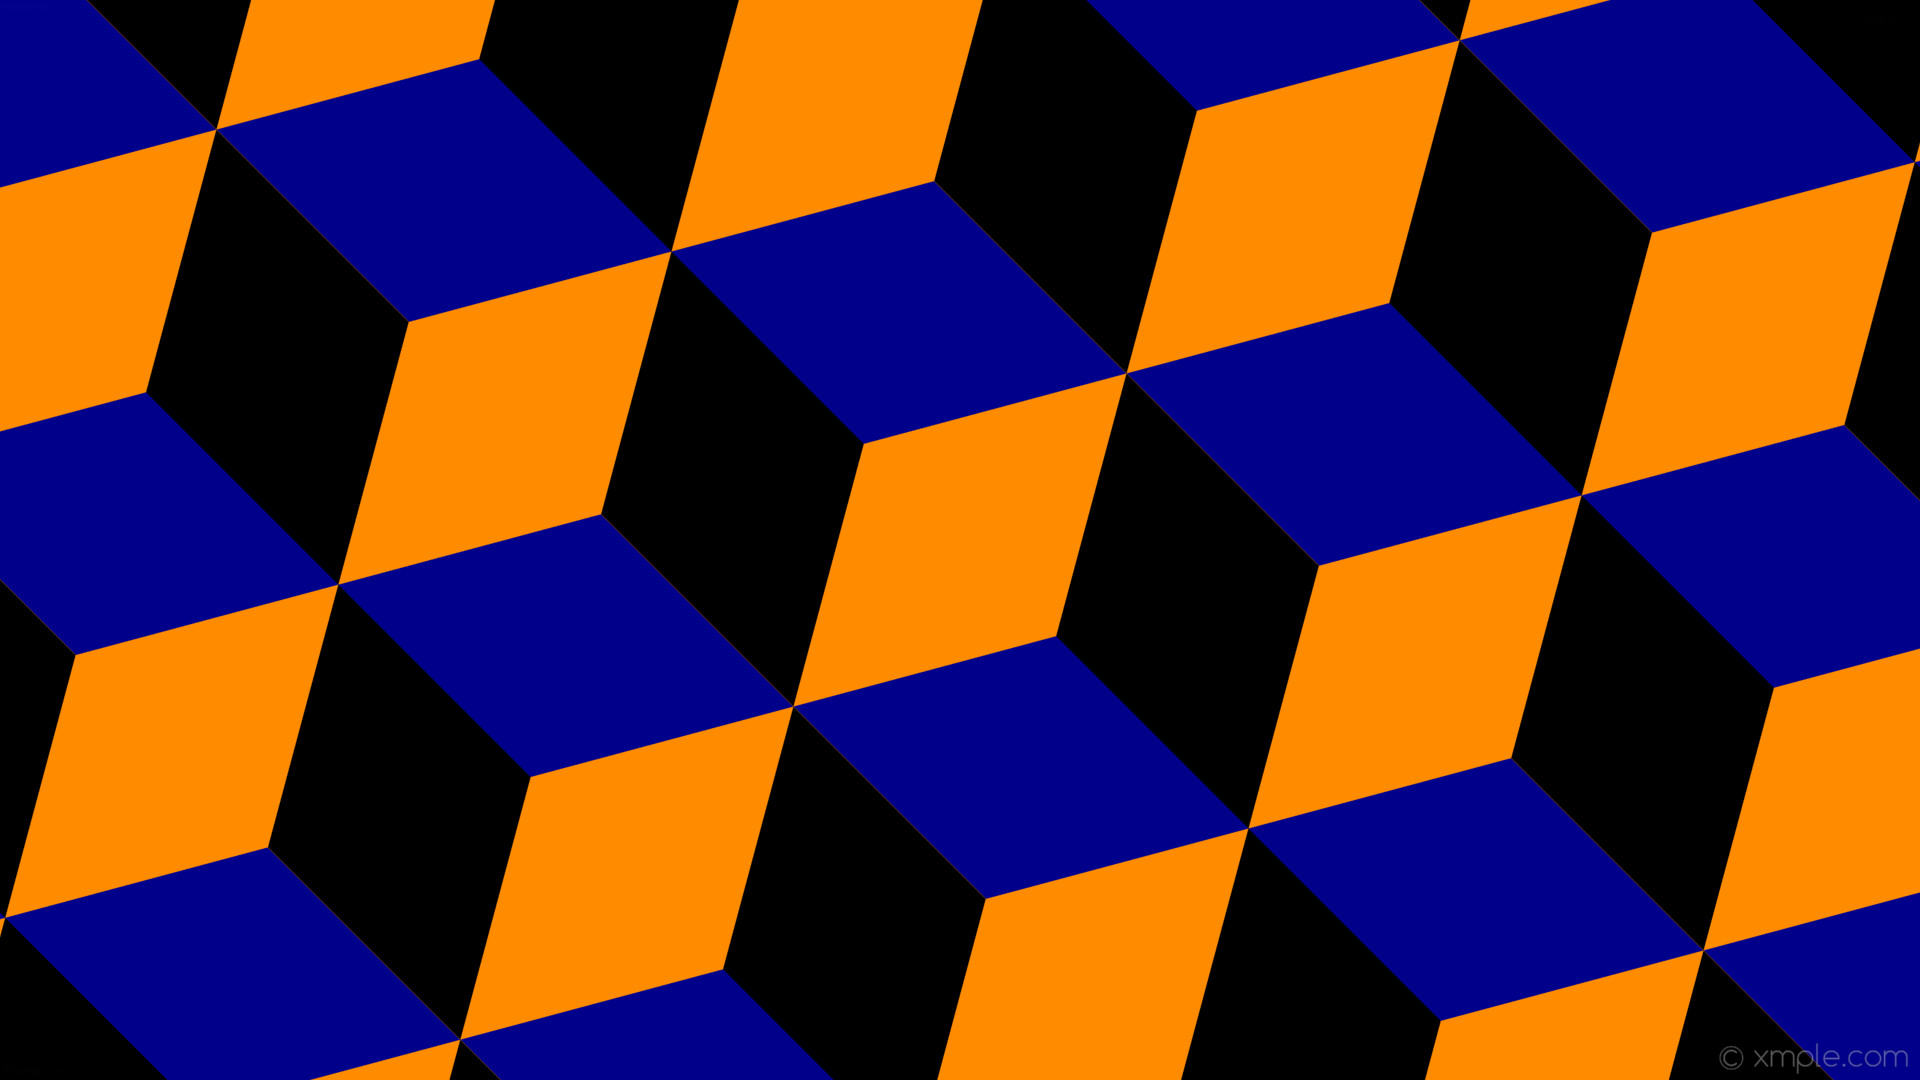 1920x1080 wallpaper 3d cubes blue orange black dark orange dark blue #ff8c00 #00008b  #000000